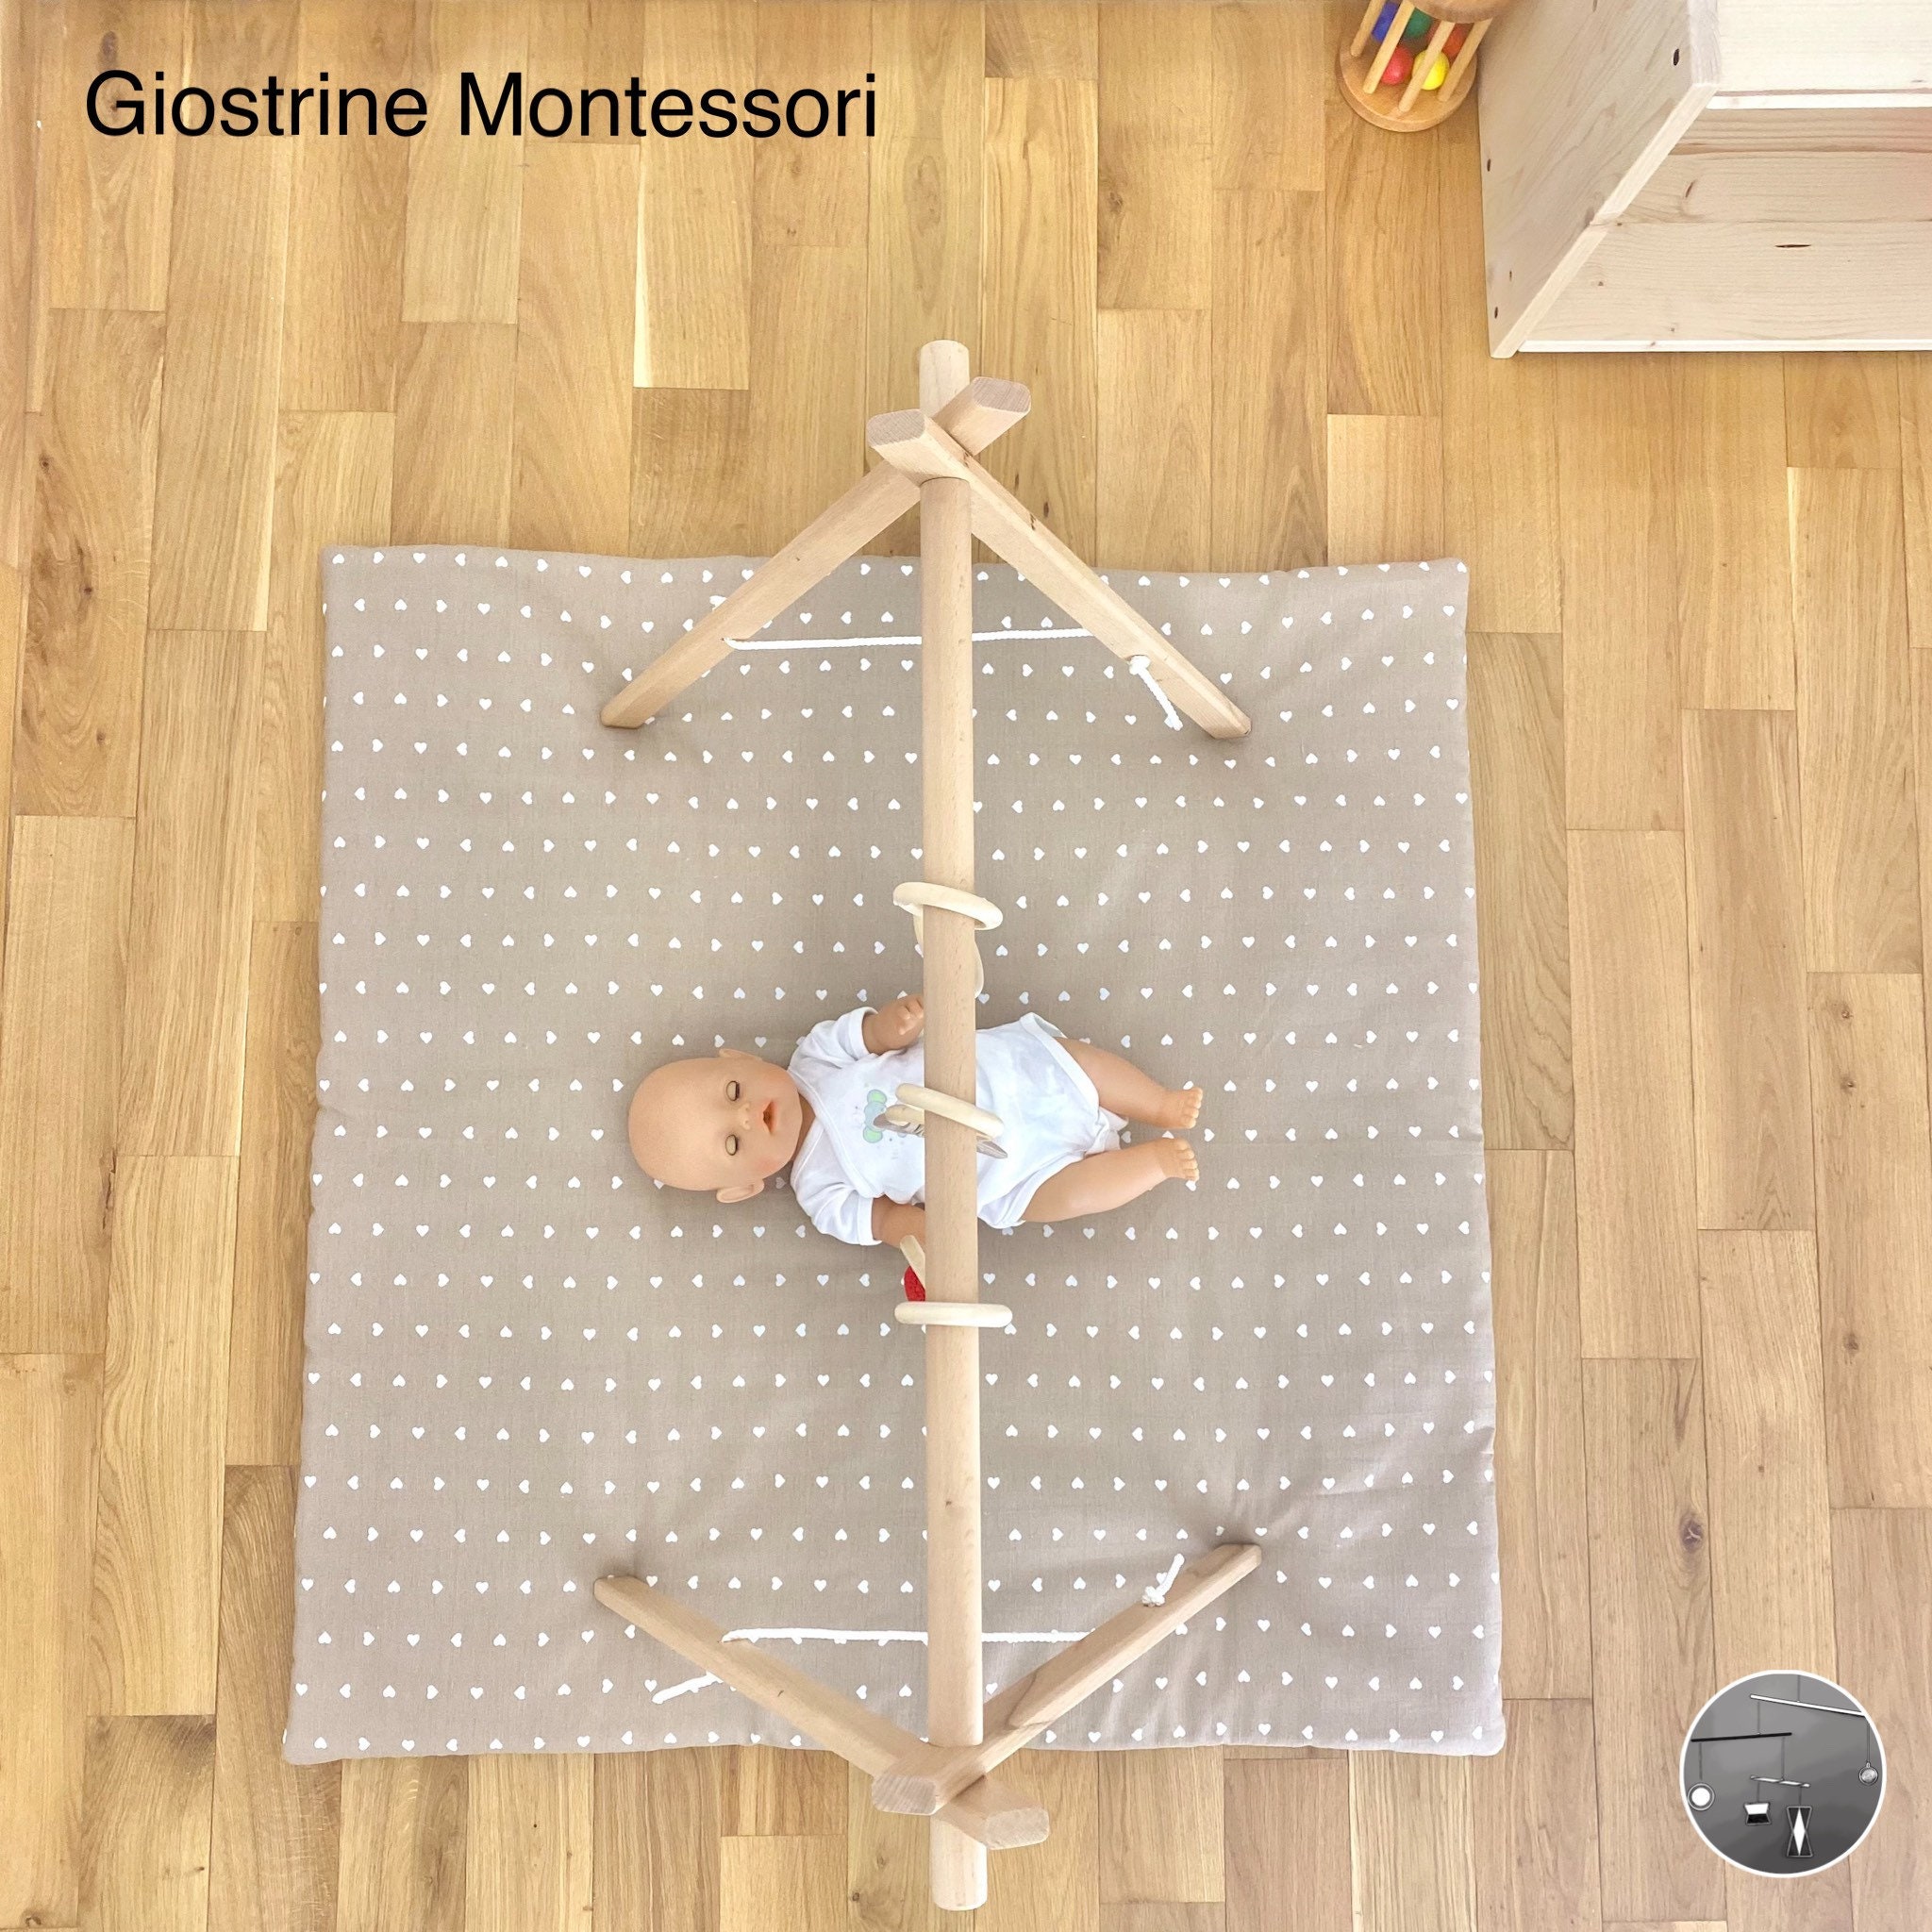 Palestrina “Gazzella” in faggio – Giostrine Montessori